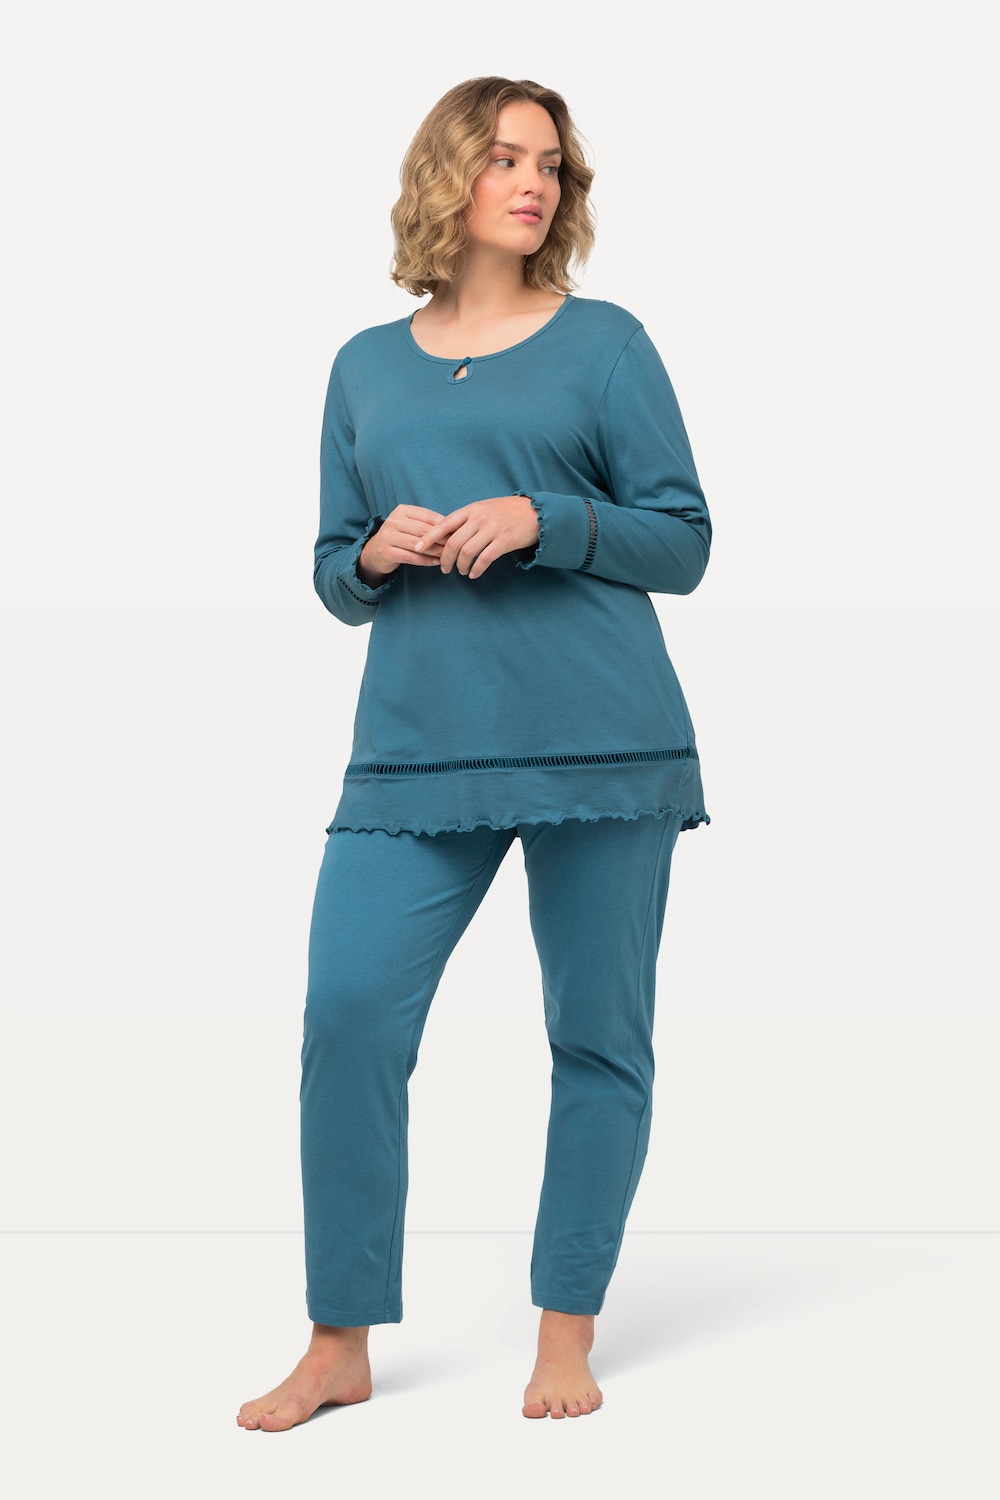 Grote Maten pyjama, Dames, turquoise, Maat: 50/52, Katoen, Ulla Popken